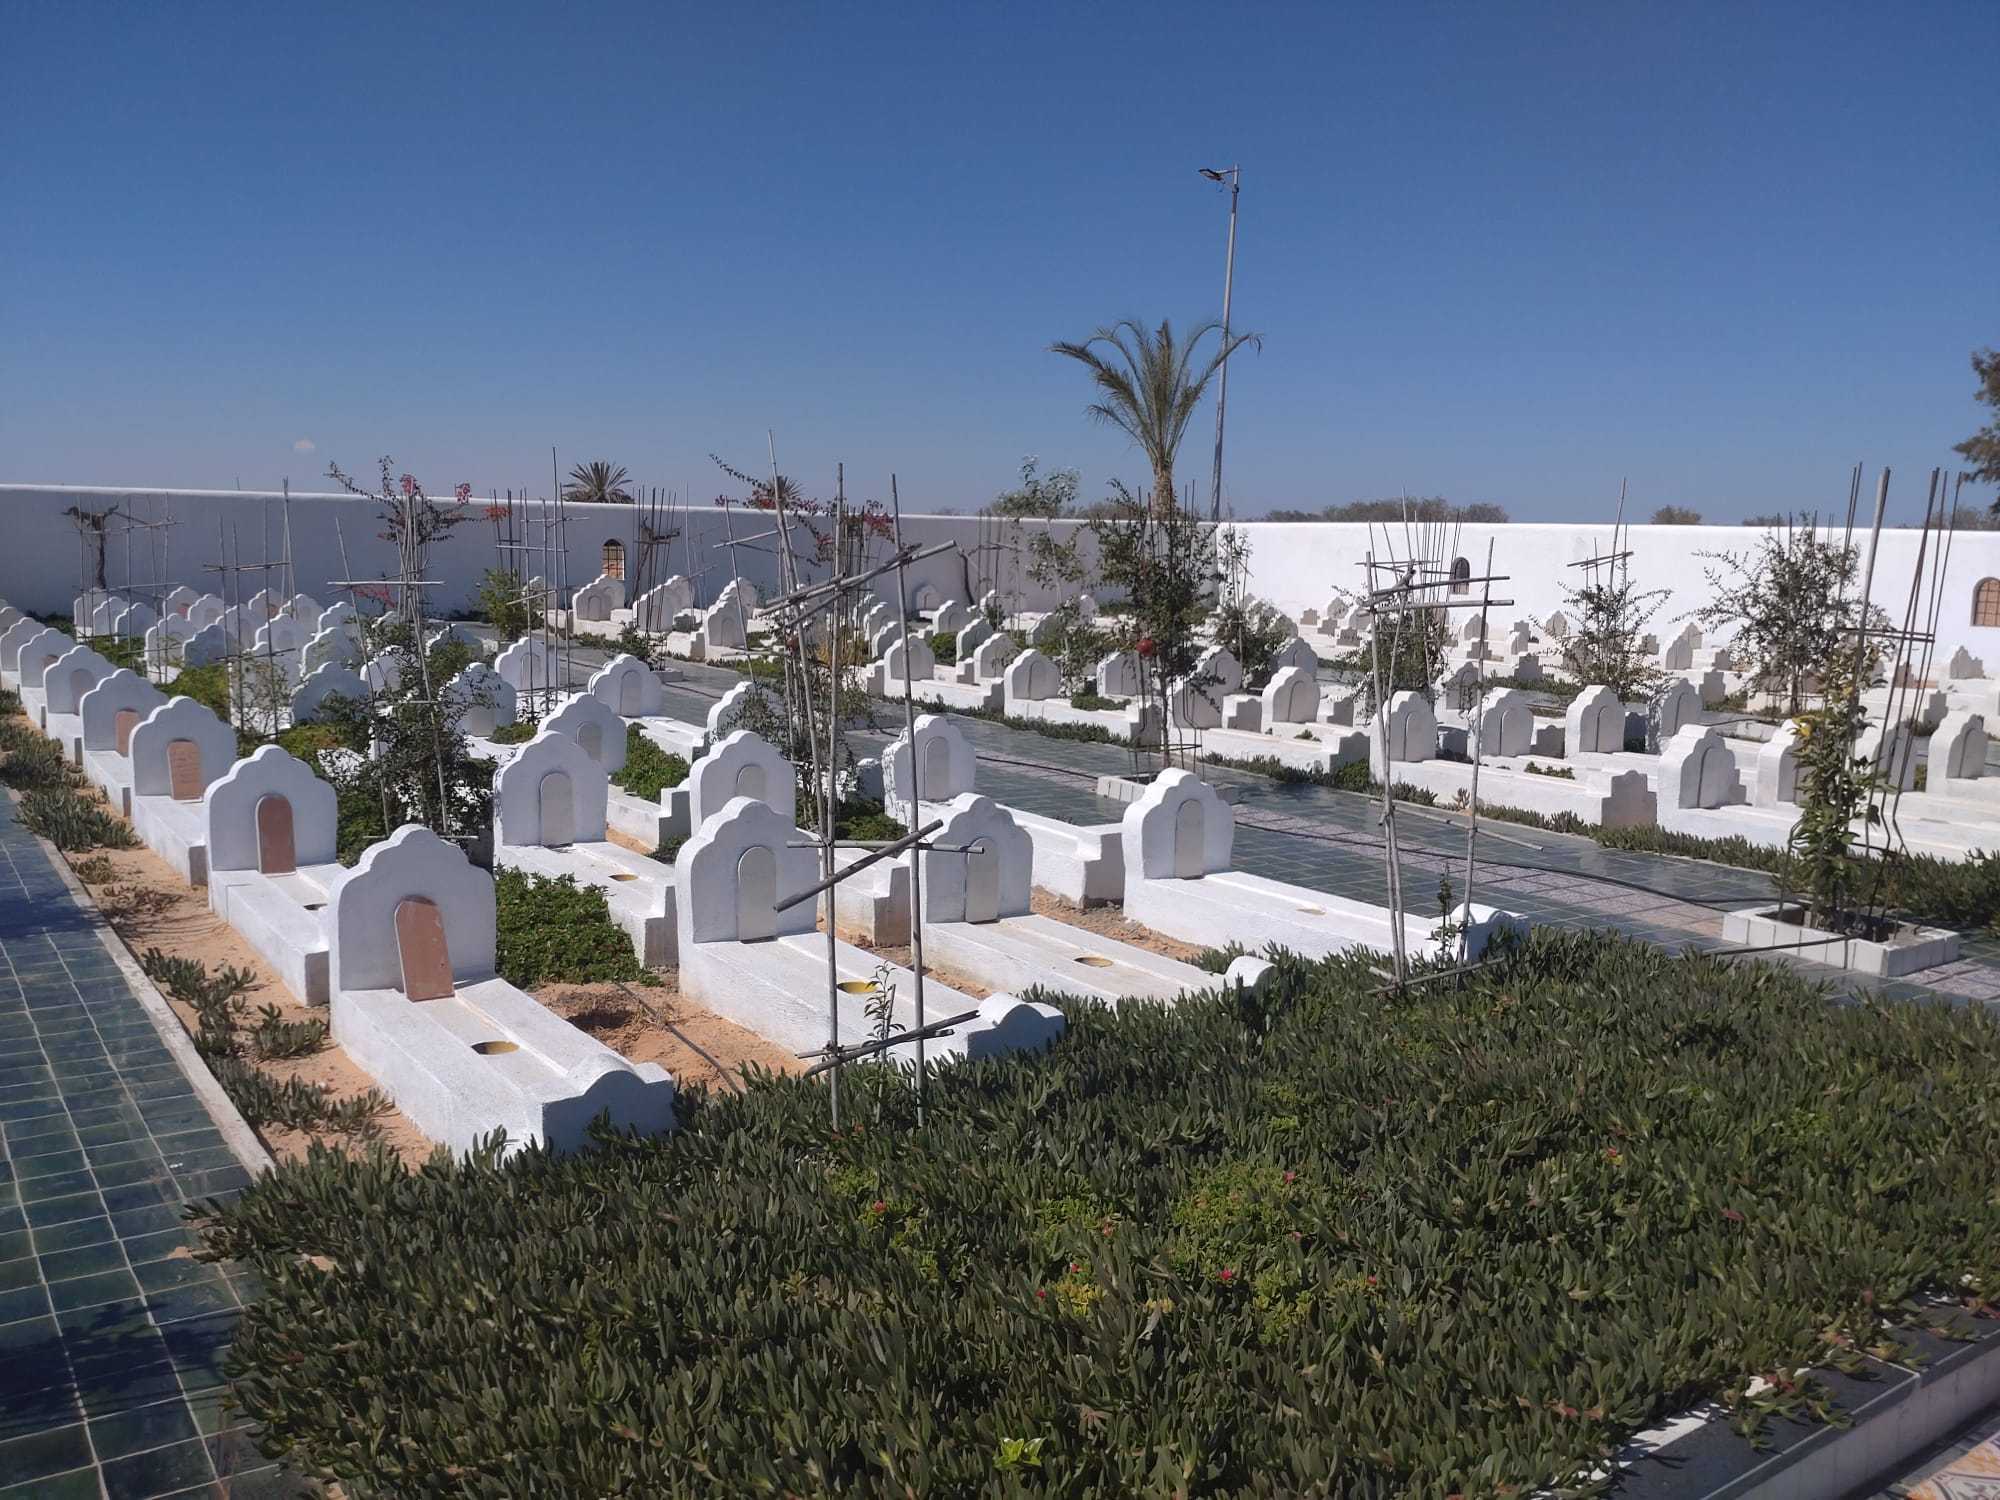 Der Friedhof der Unbekannten in Zarzis, Tunesien. Foto: Vanessa Barisch